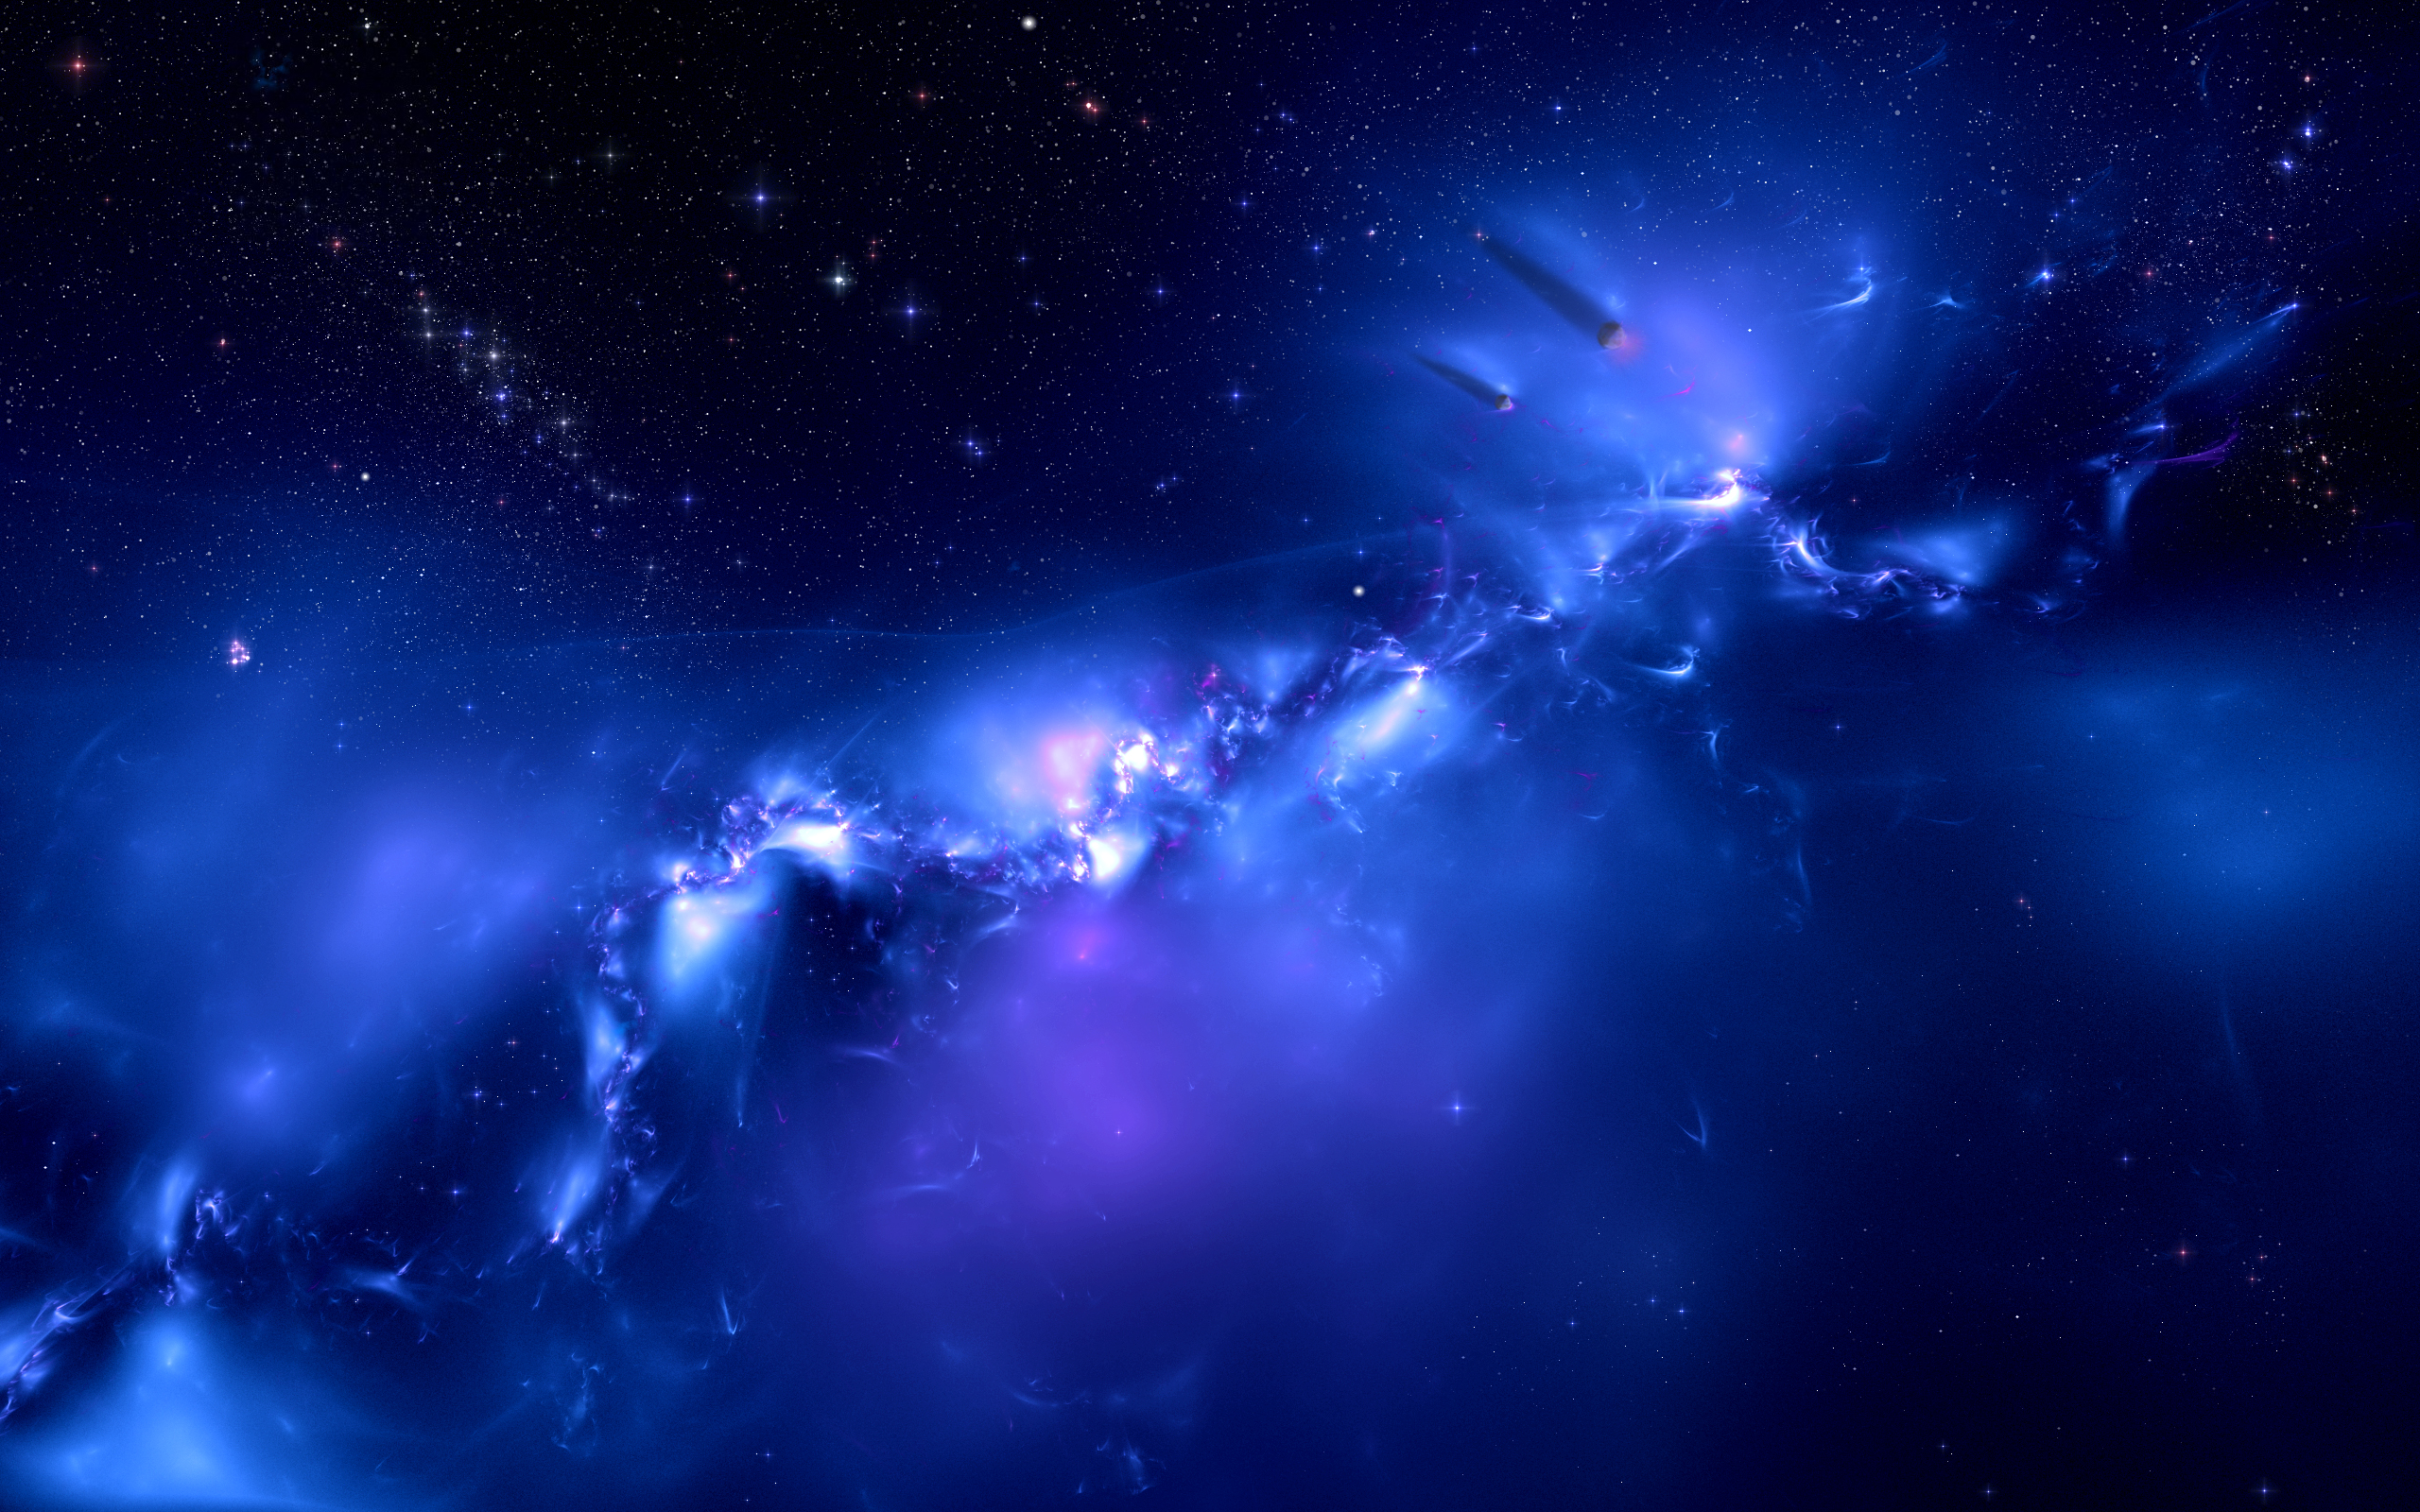 Hãy sử dụng hình nền Vũ trụ khoa học viễn tưởng màu xanh để biến màn hình máy tính của bạn thành một trạm vũ trụ hiện đại và đầy phong cách. Những hình ảnh khoa học viễn tưởng tuyệt đẹp về vũ trụ sẽ khiến bạn trầm trồ ngưỡng mộ, cũng như tận hưởng những trải nghiệm thú vị của những chuyến bay vượt xa tầm mắt của con người.